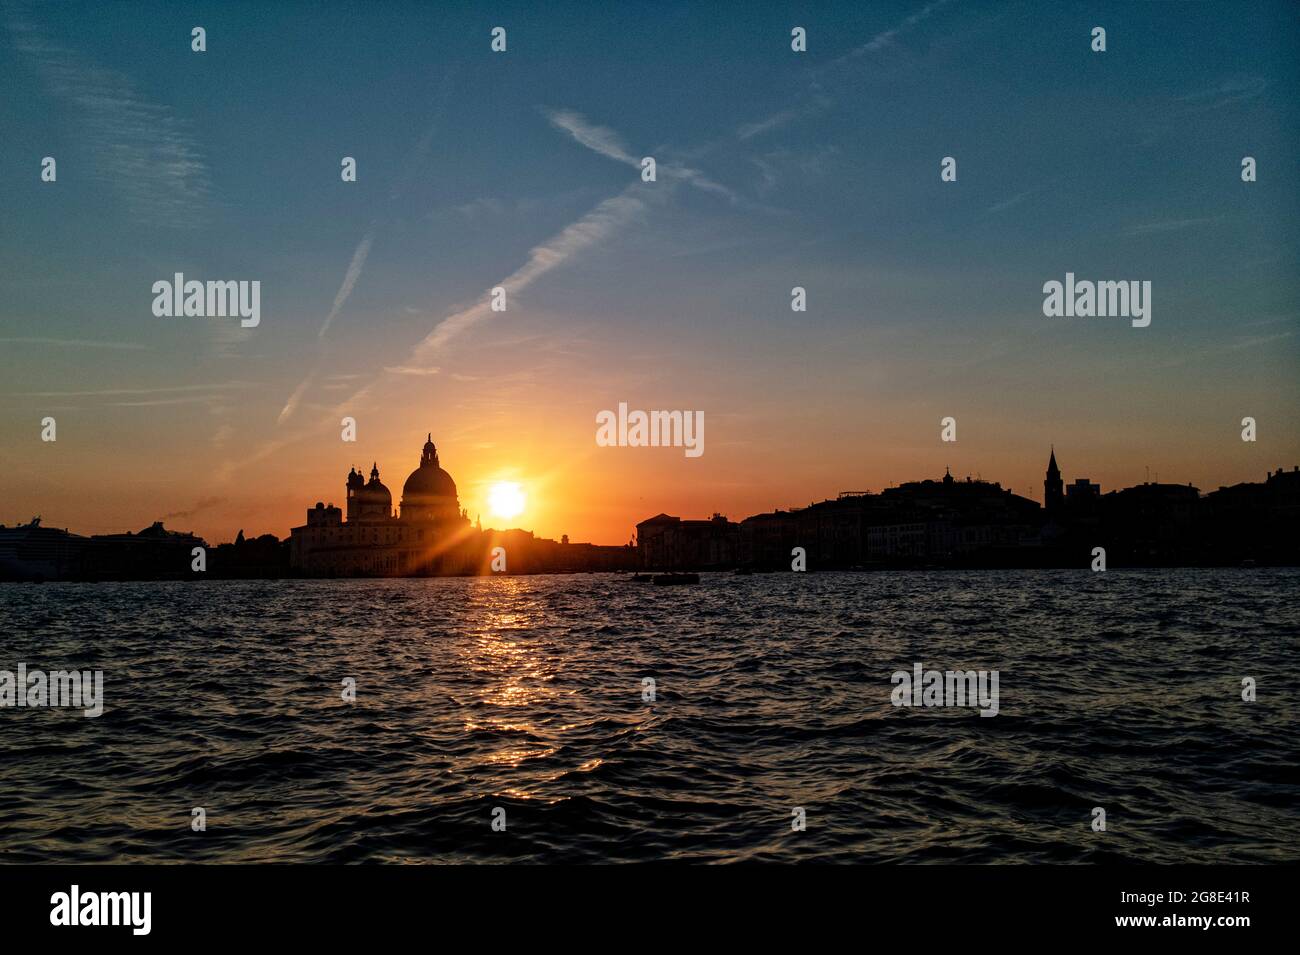 Europe - Italie, Venise: Une vue sur la célèbre ville de Venise qui a été construite sur plus de 100 petites îles dans un lagon dans la mer Adriatique. Banque D'Images